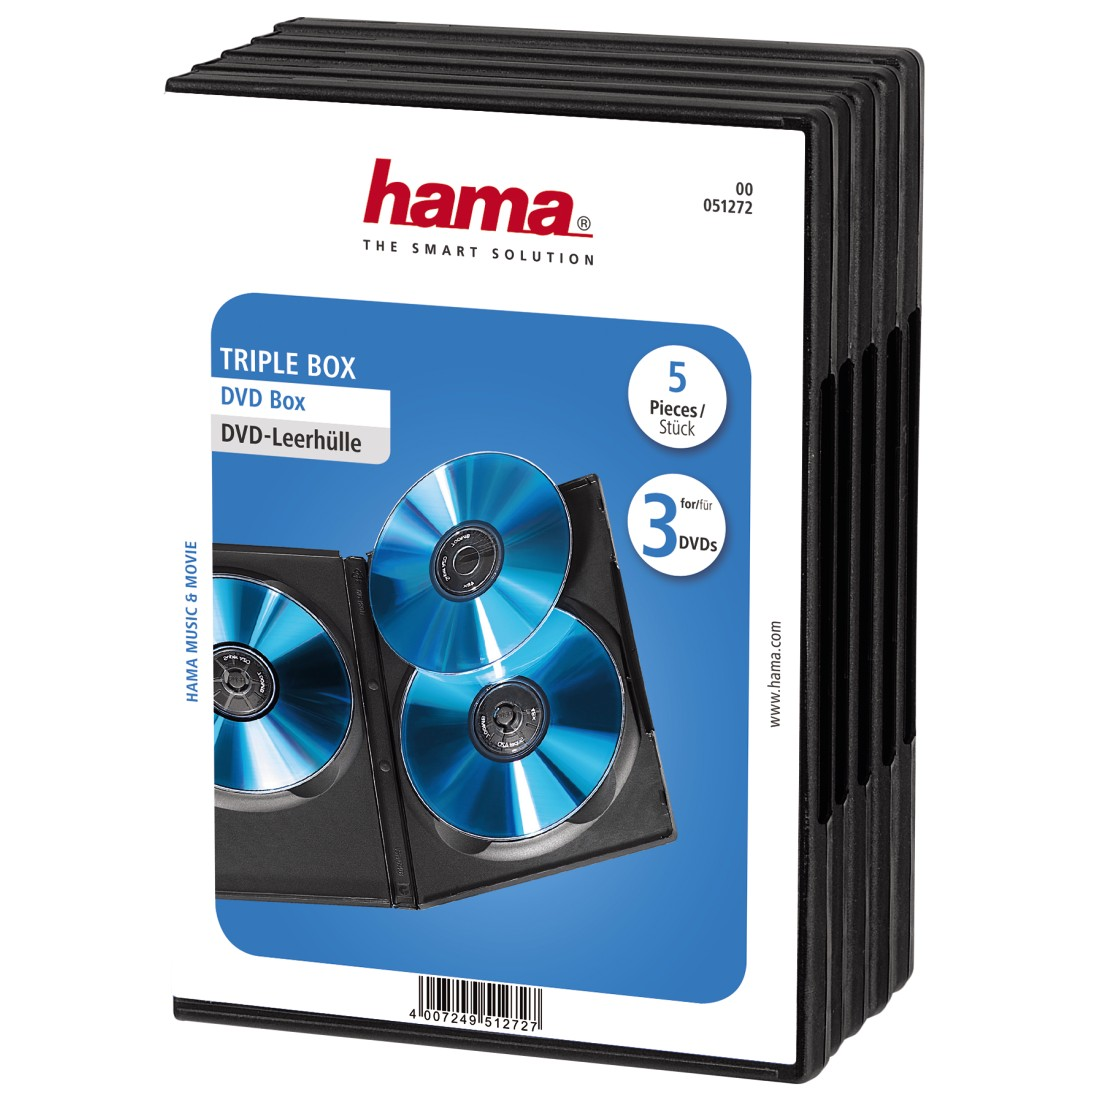 HAMA 5er-Pack DVD-Leerhülle Box Schwarz Triple